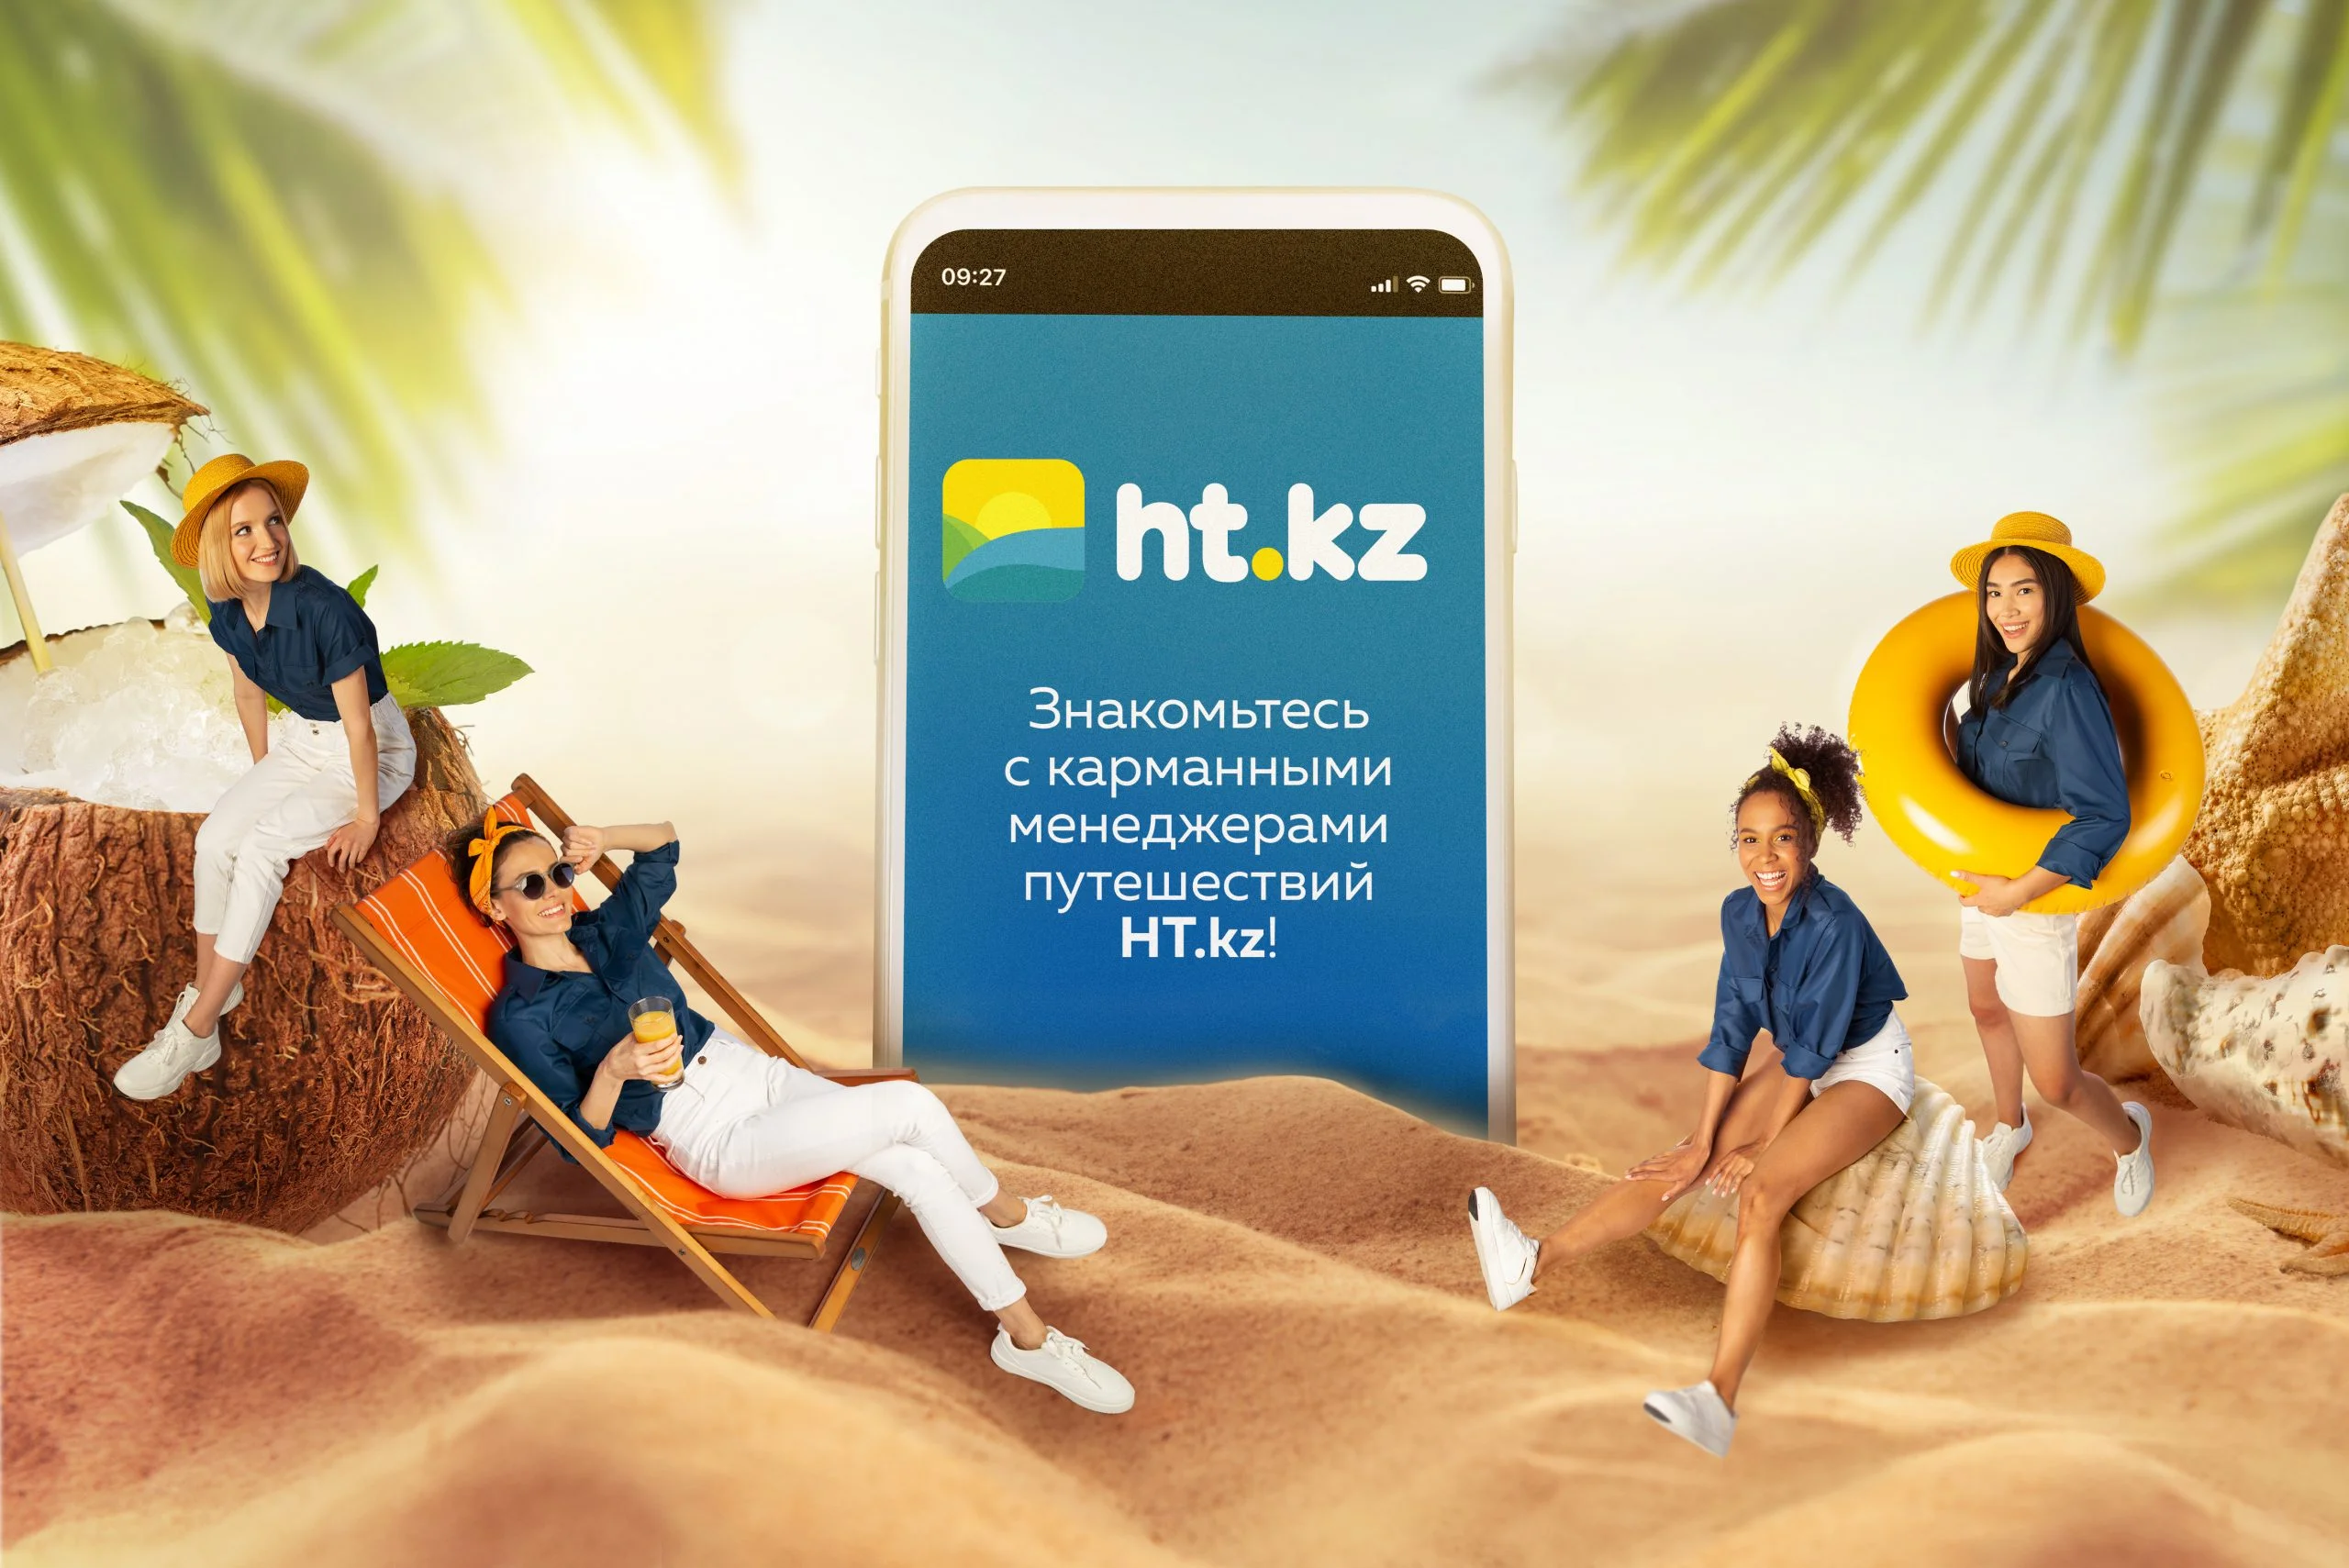 Реклама туристической фирмы HT.KZ